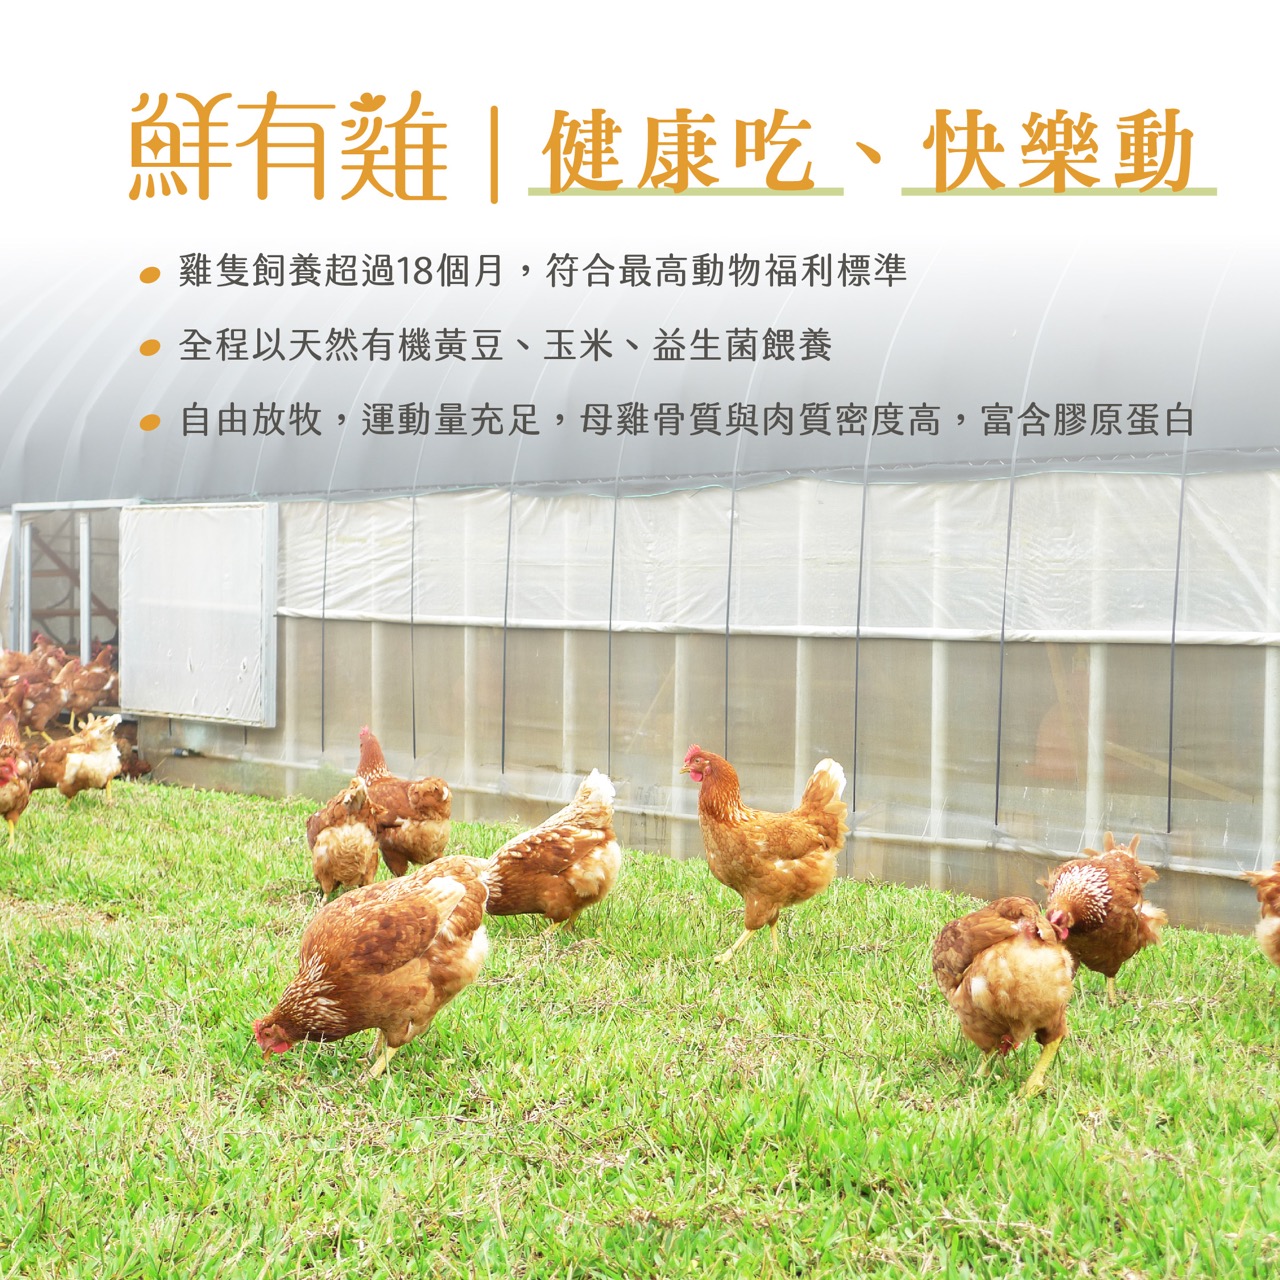 雞隻飼養超過18個月，自由放牧環境成長，以有機飼料餵養，富含膠原蛋白